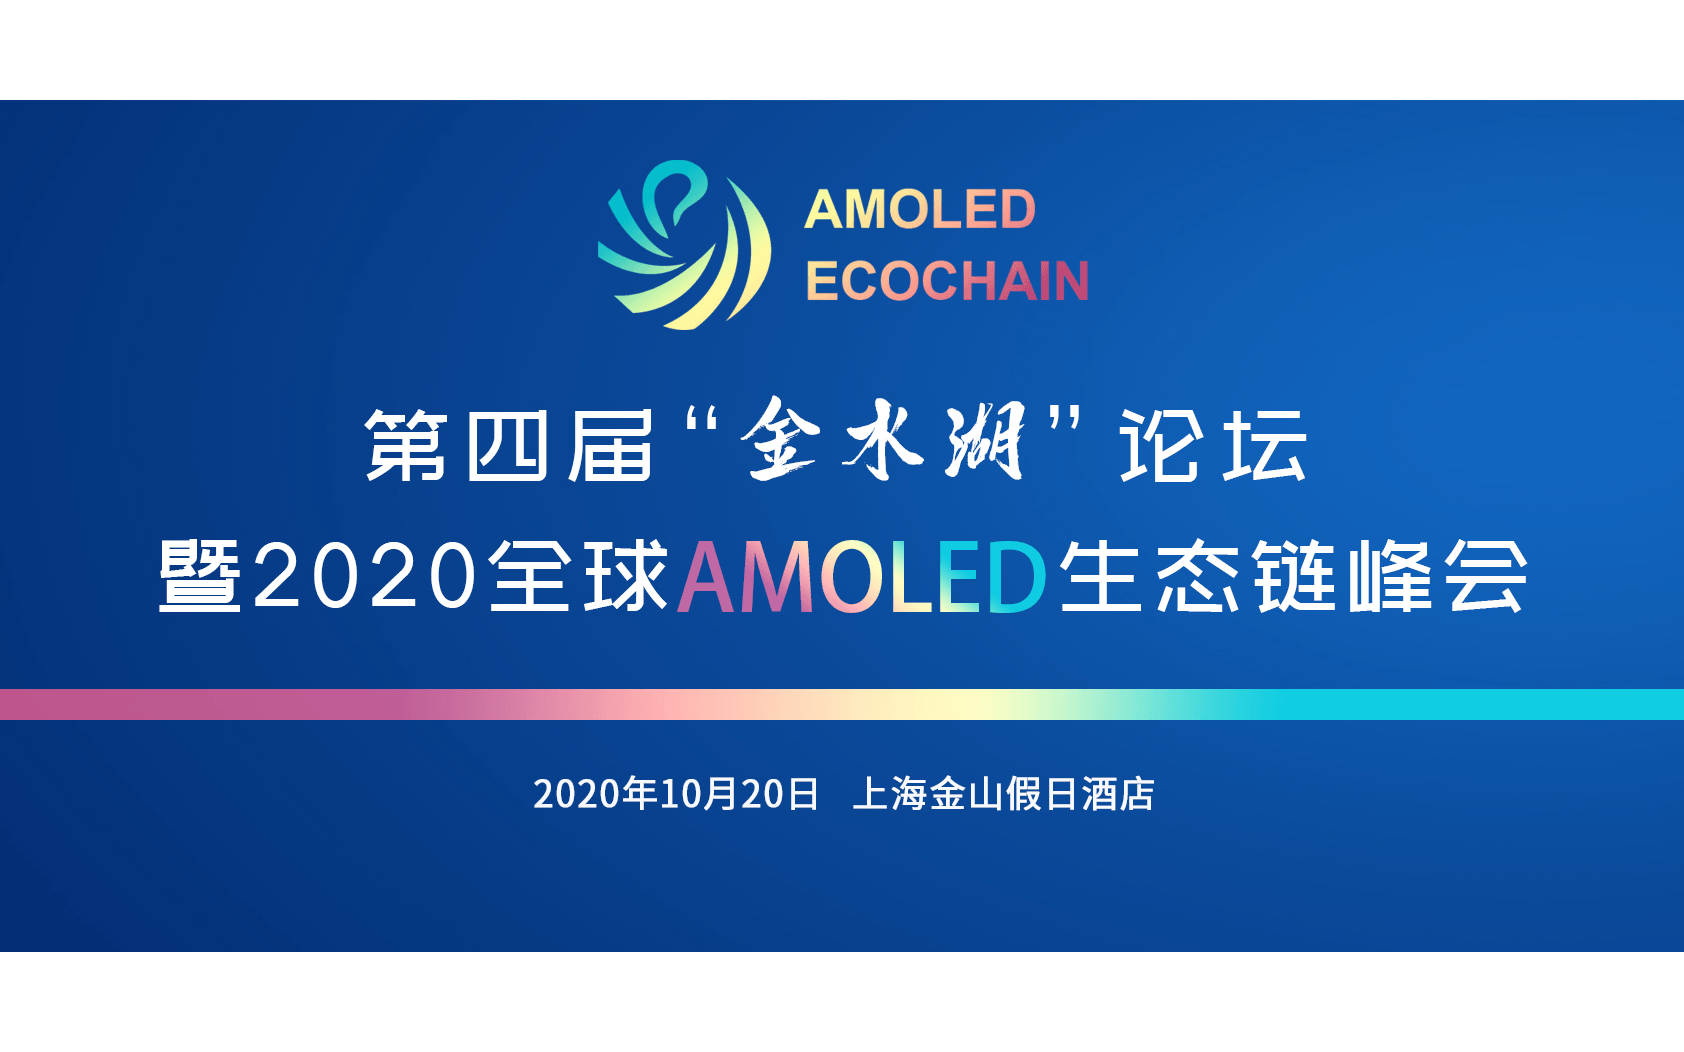 第四届“金水湖”论坛 暨2020全球AMOLED生态链峰会